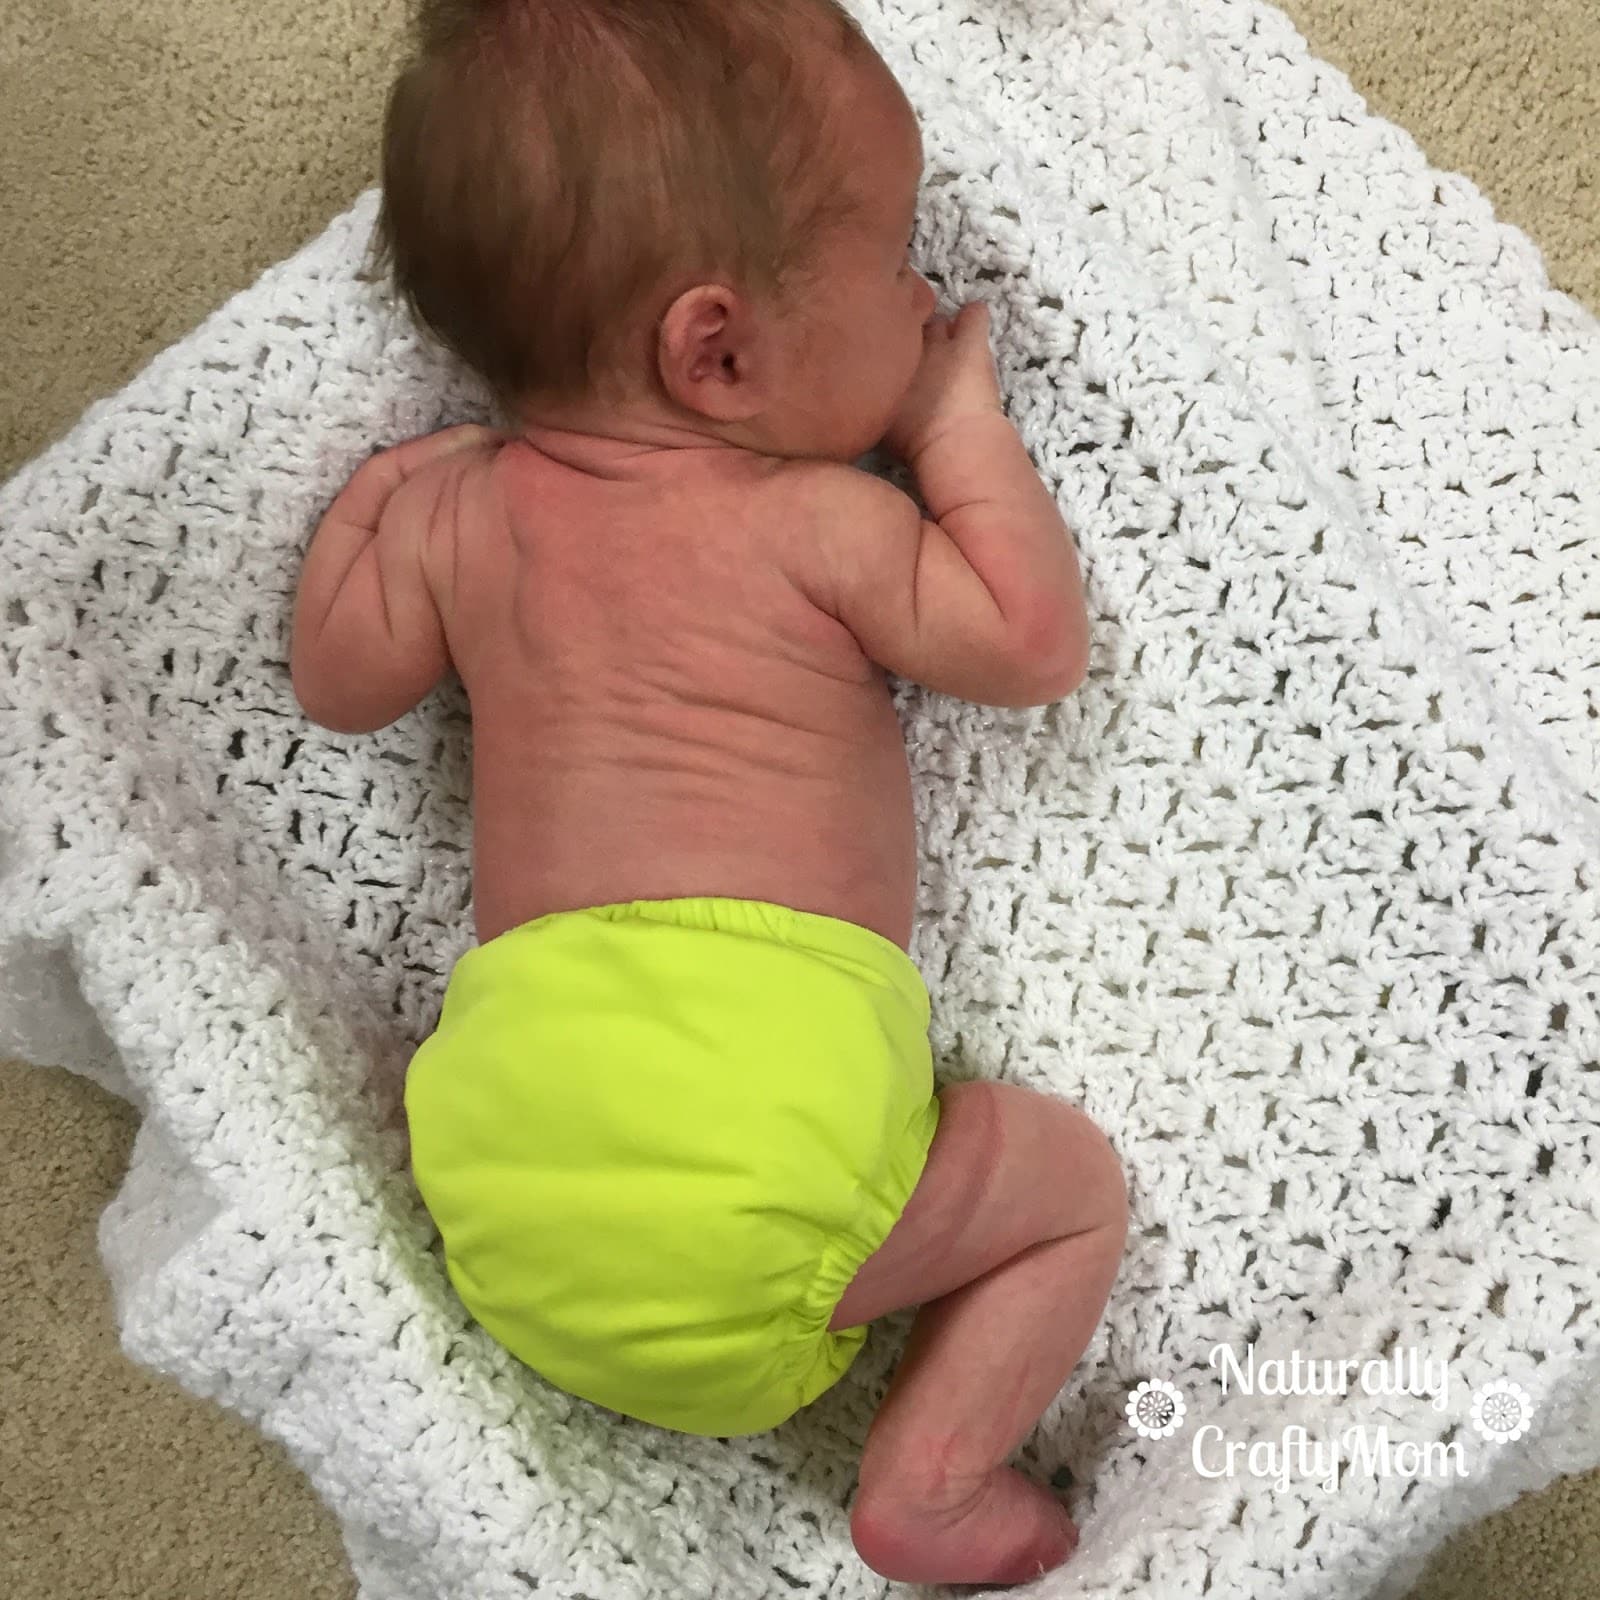 Newborn Diaper Trial Restuls: GroVia Newborn All in One